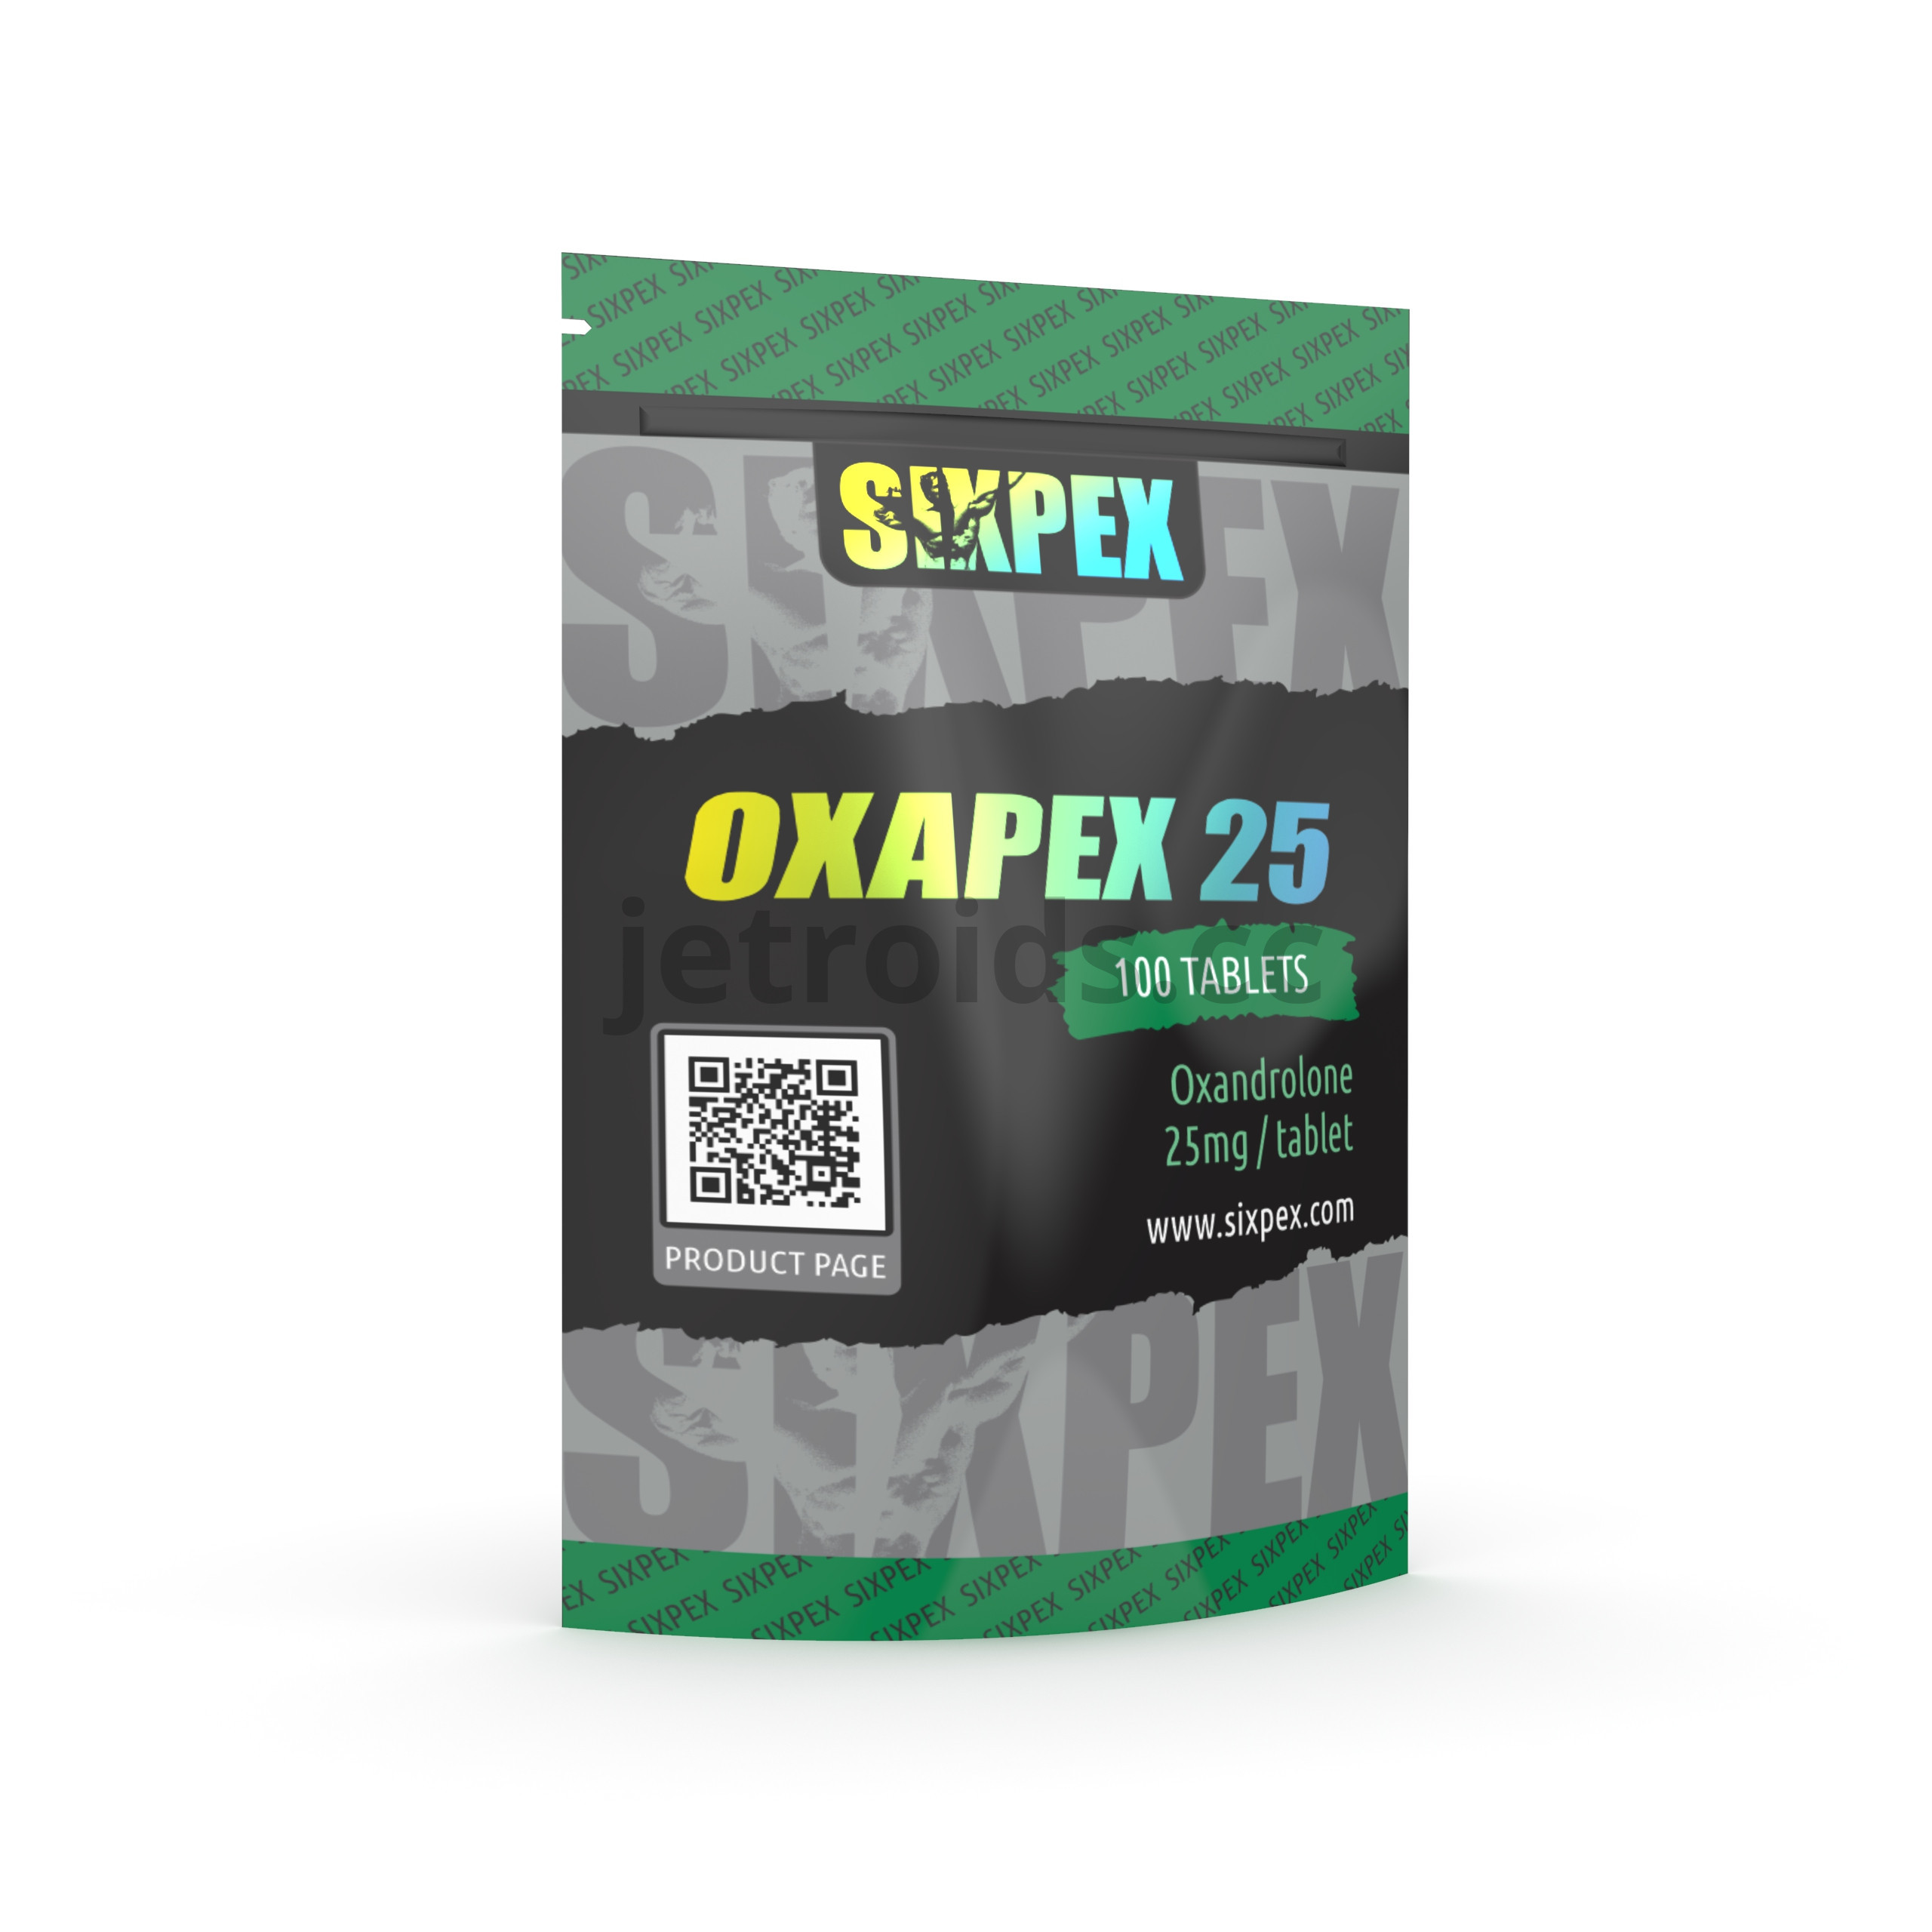 Sixpex Oxapex 25 Product Info